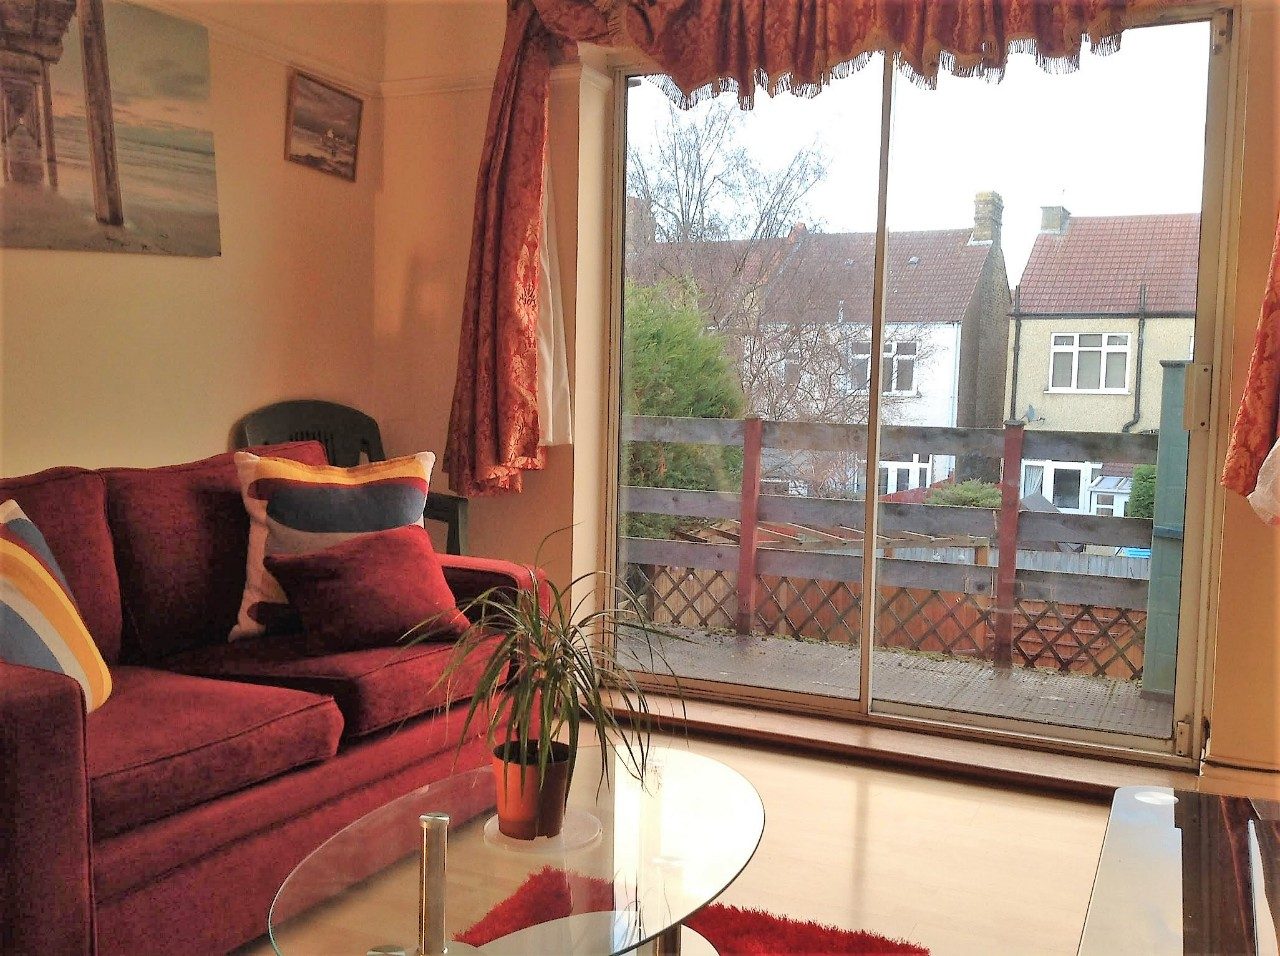 One Bedroom First Floor Flat To Rent In Croydon The Online